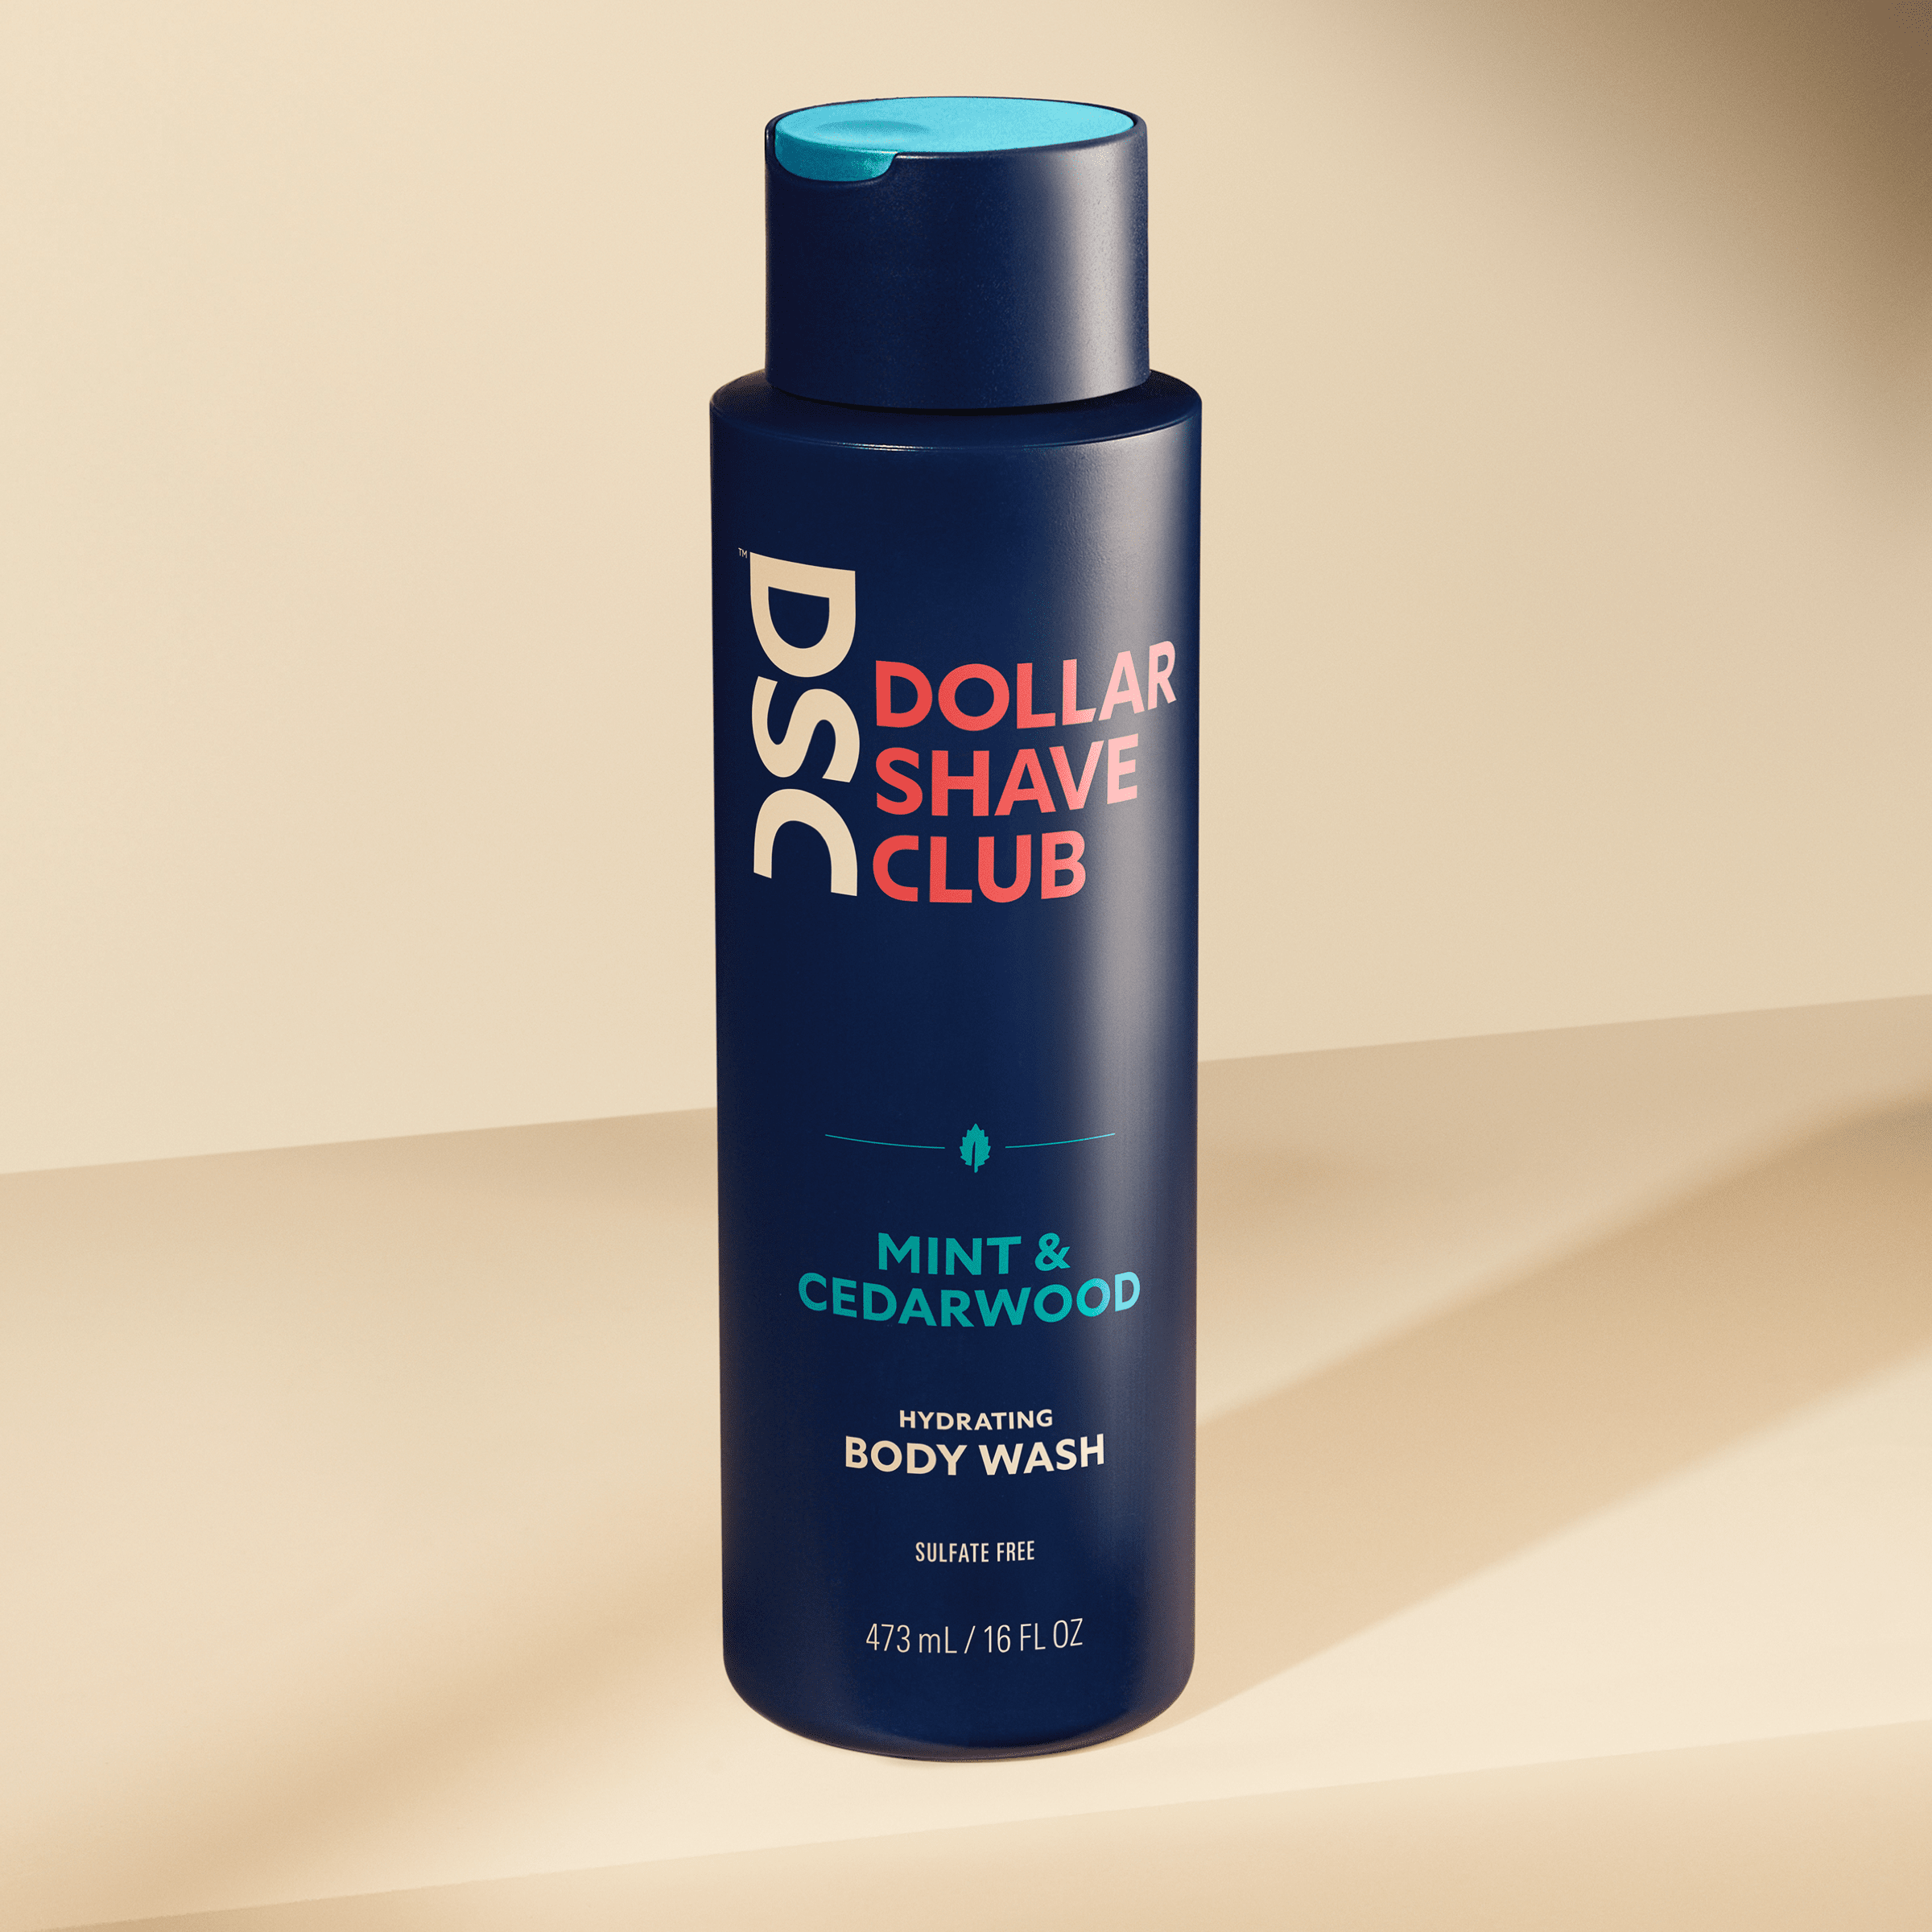 Dollar Shave Club Whole Body Wash Mint Cedarwood against tan backdrop.